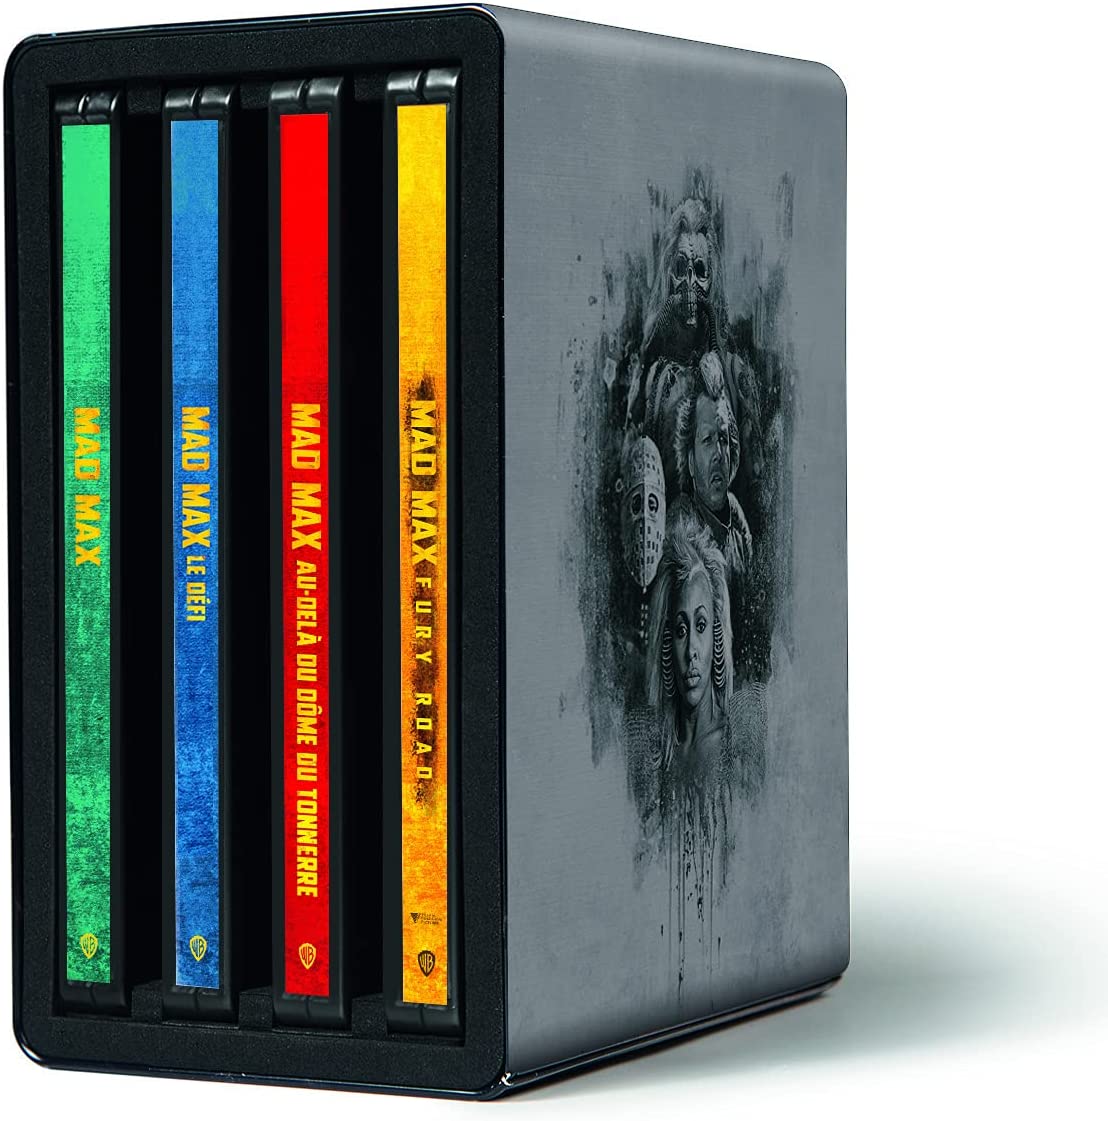 Voici 10 coffrets Blu-ray à glisser sous le sapin de toute urgence 🍿